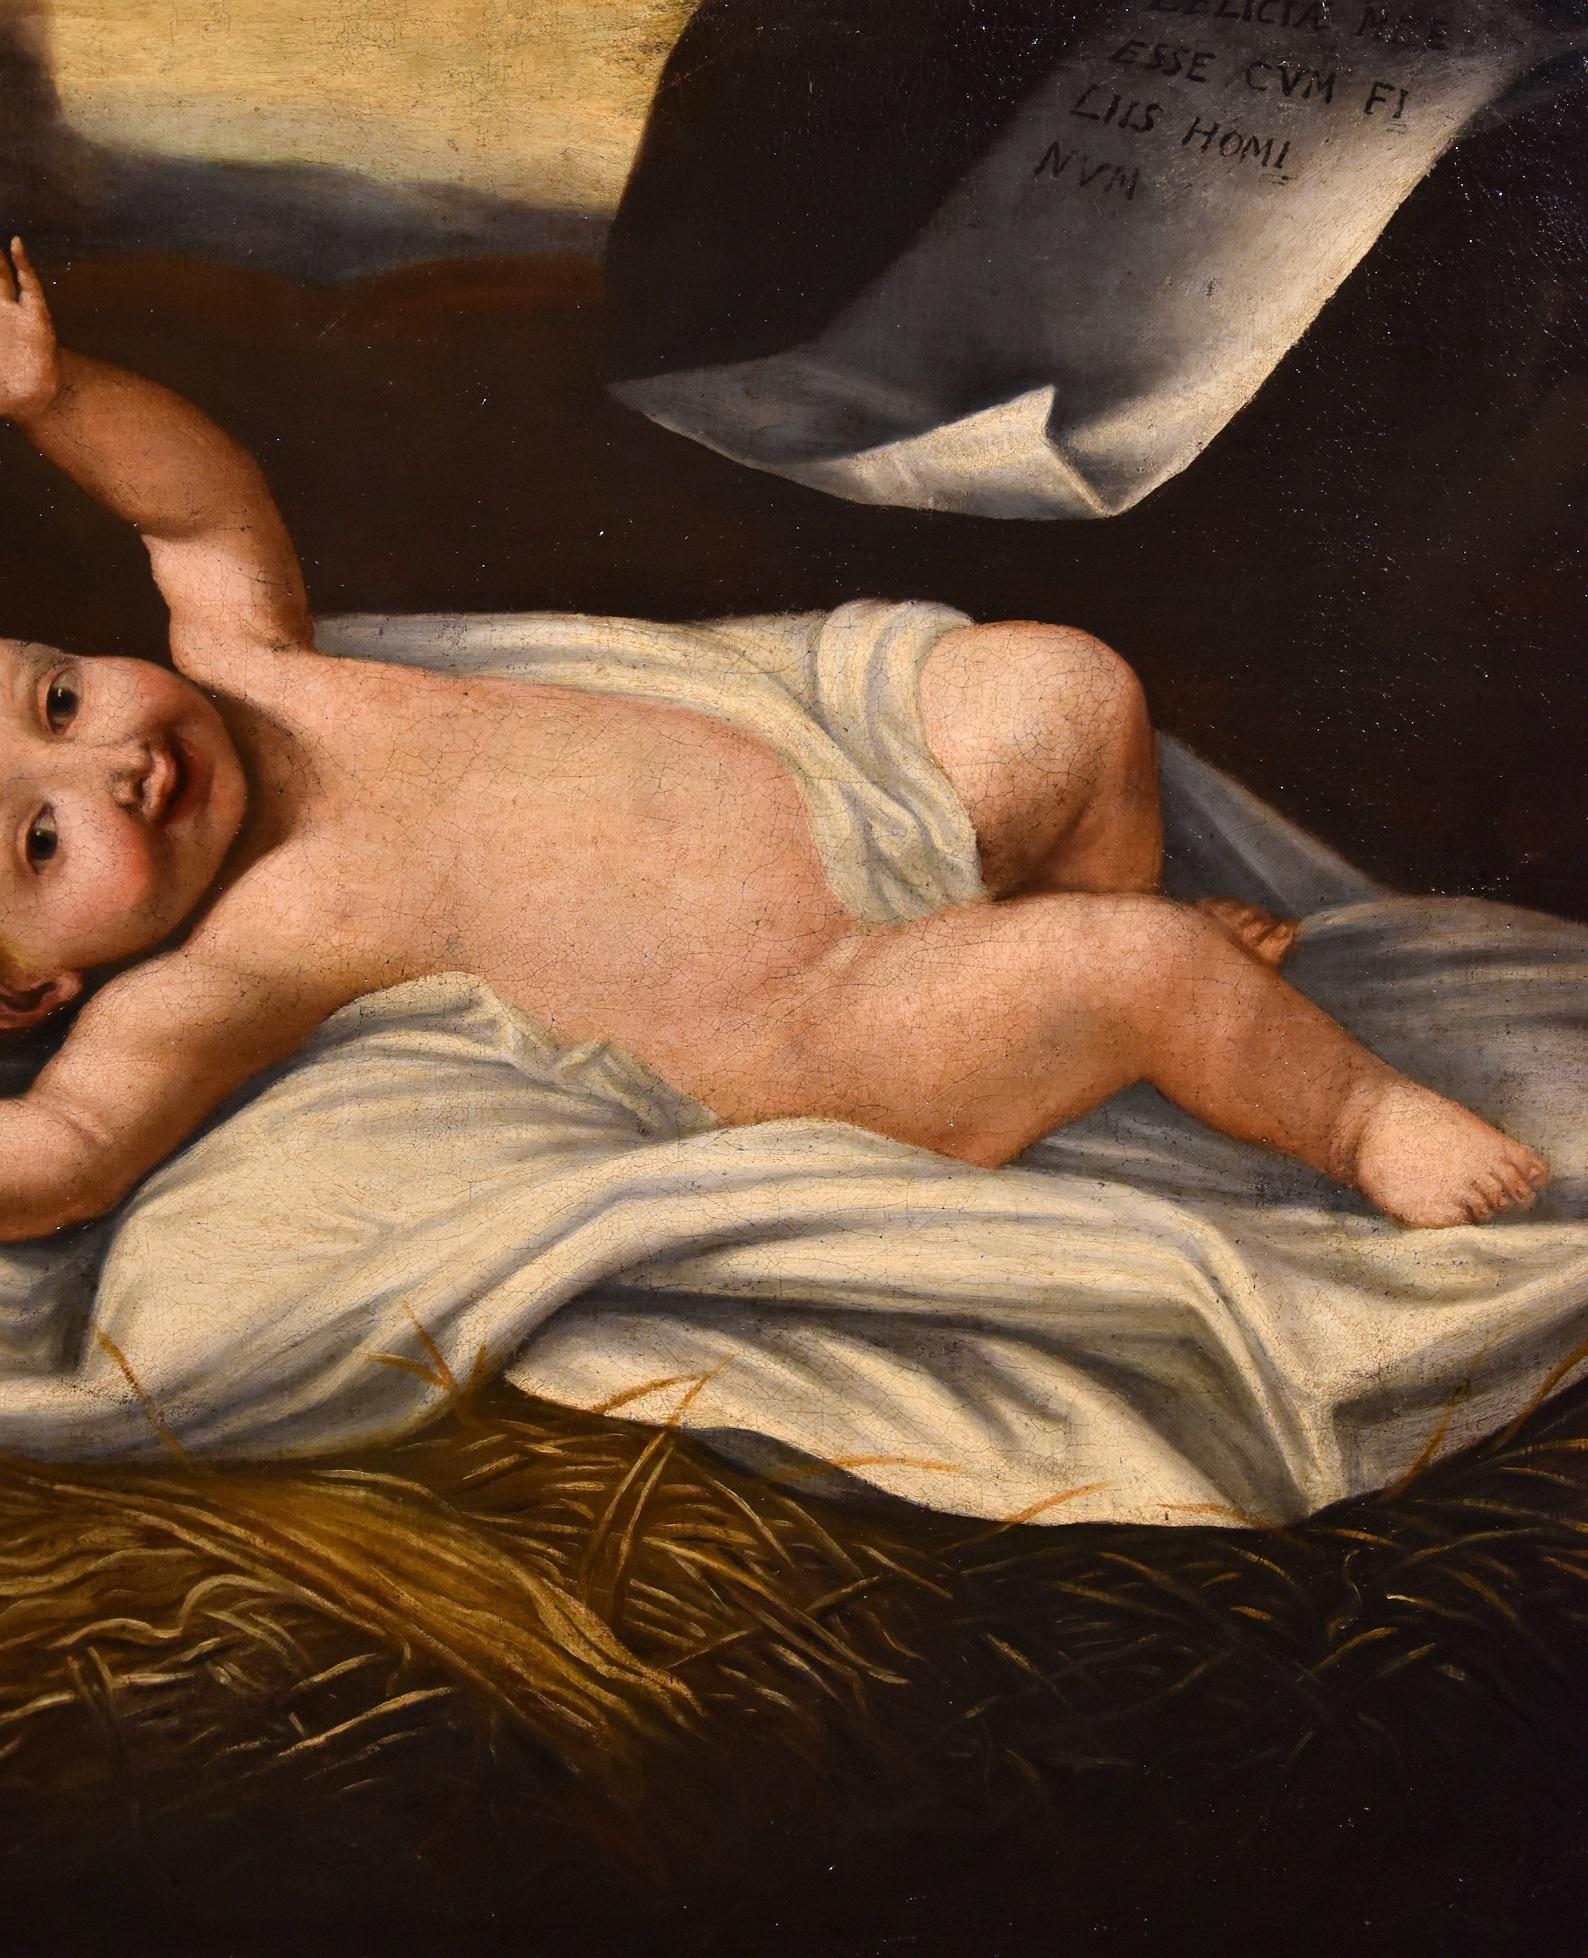 Peintre lombard actif au XVIIe siècle
L'enfant Jésus

Peinture à l'huile sur toile
70 x 82 cm. - Dans un cadre ancien 78 x 91 cm.

Ce tableau représente un thème iconographique inhabituel et plaisant, utilisé occasionnellement par la tradition